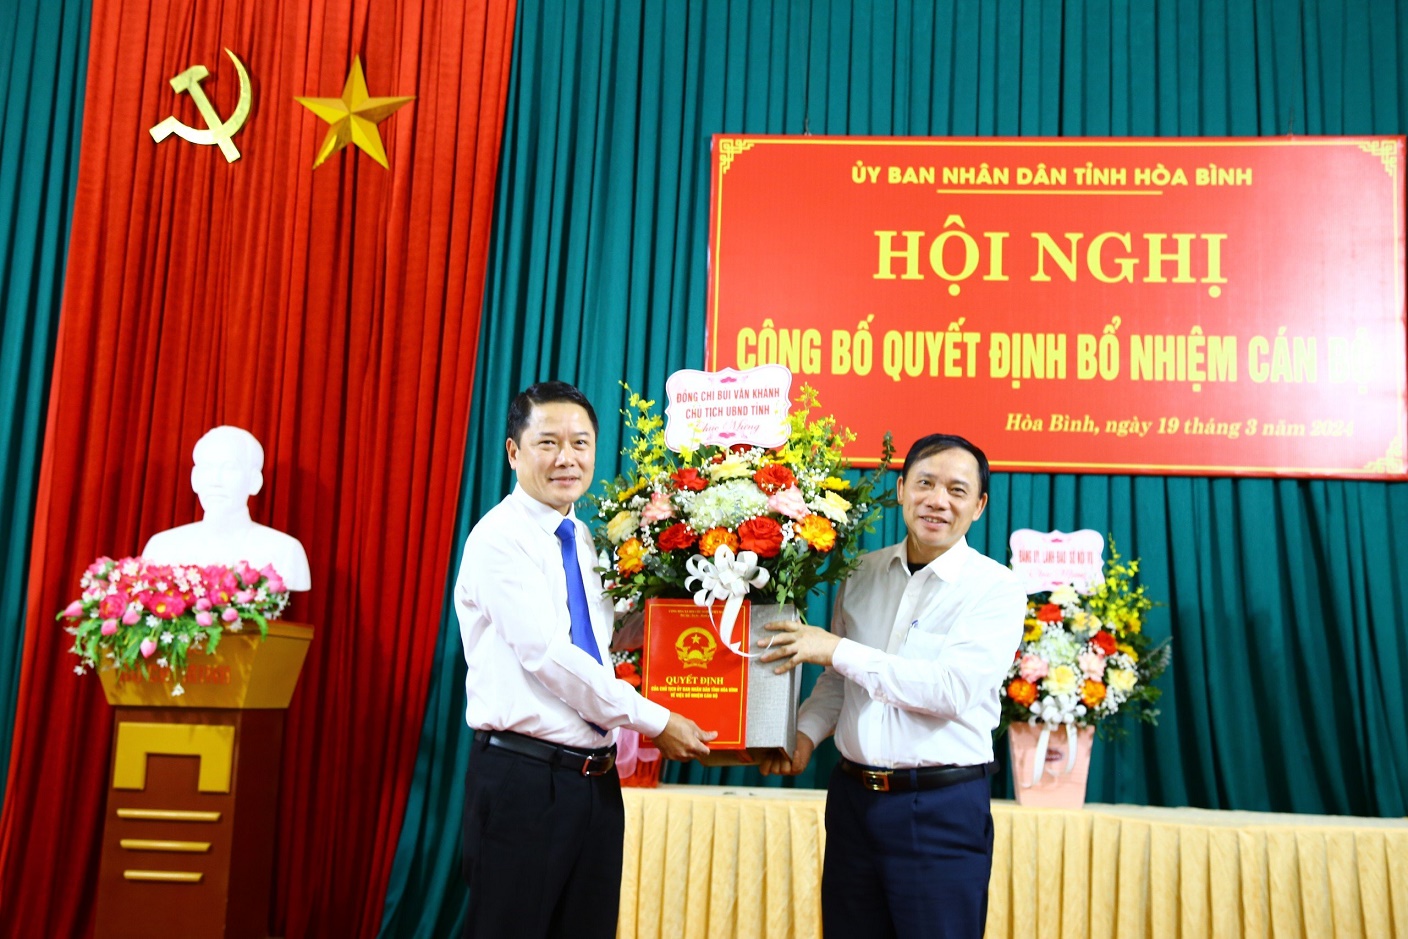 Đồng chí Bùi Văn Khánh, Phó Bí thư Tỉnh ủy, Chủ tịch UBND tỉnh trao Quyết định và tặng hoa chúc mừng đồng chí Bùi Ngọc Đại, Phó Giám đốc Sở Nội vụ.